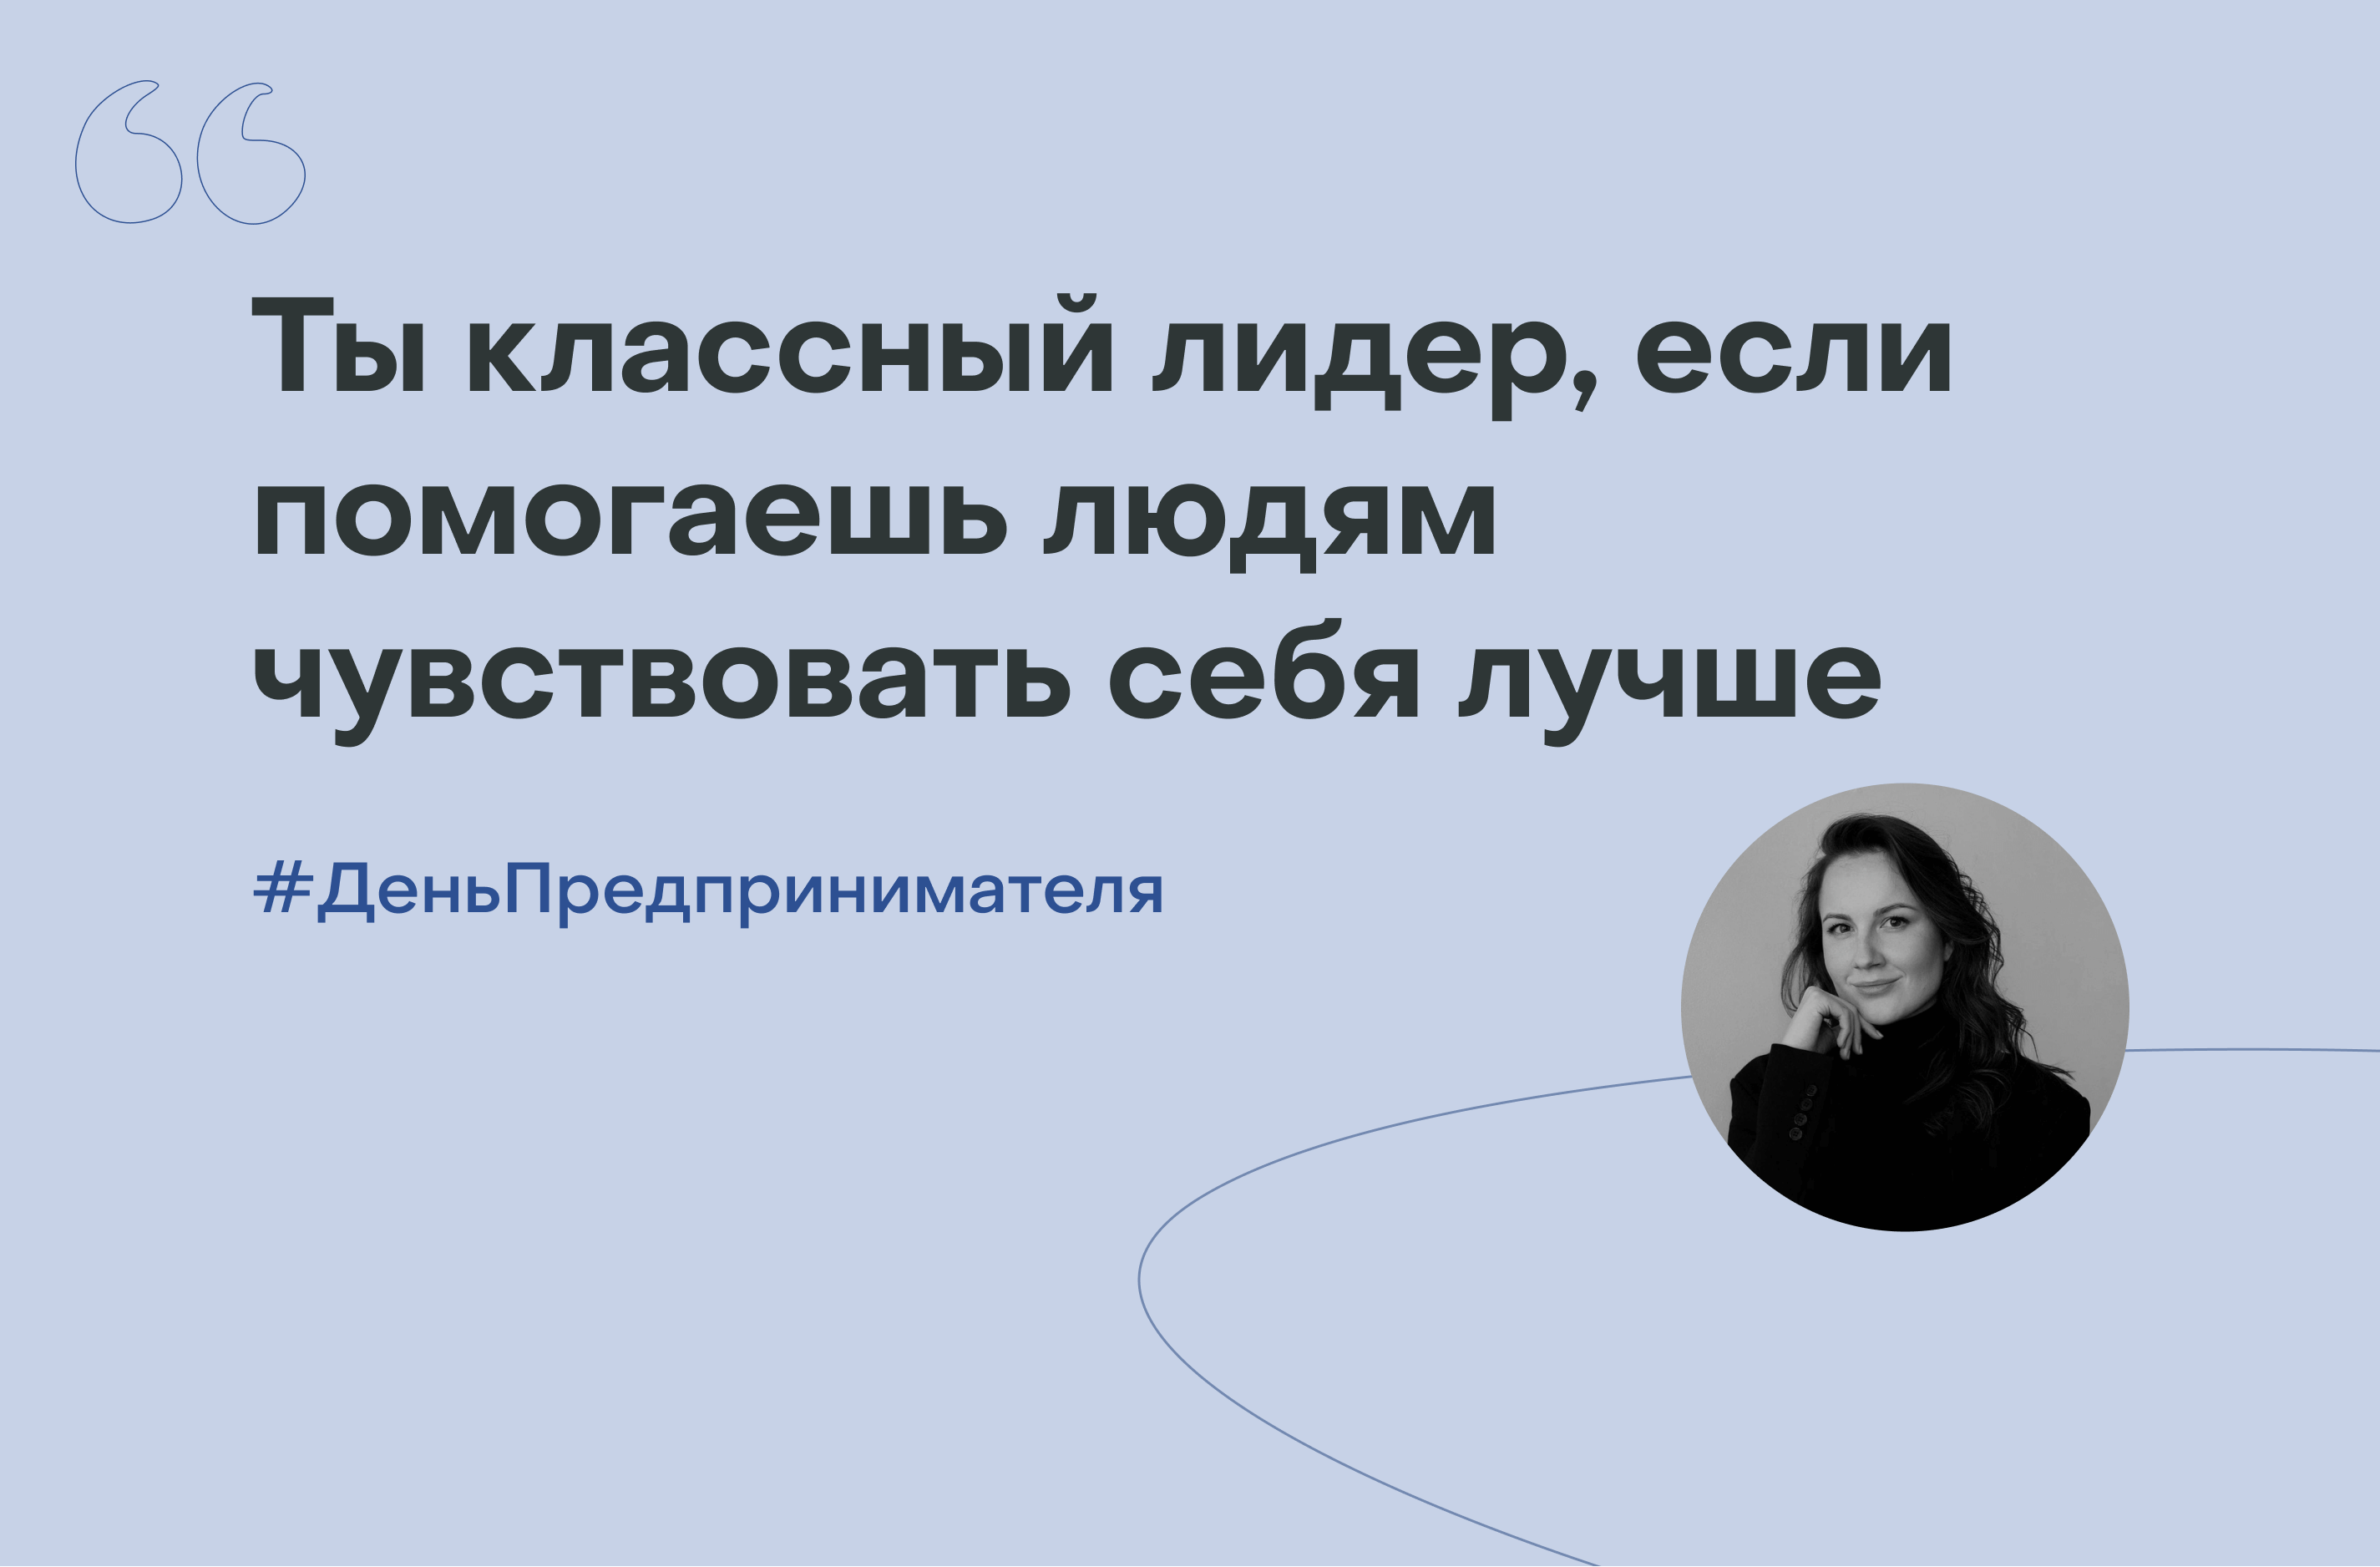 Аня Ковалёва: «Лидер — это человек, благодаря которому ты можешь больше, чем думал»